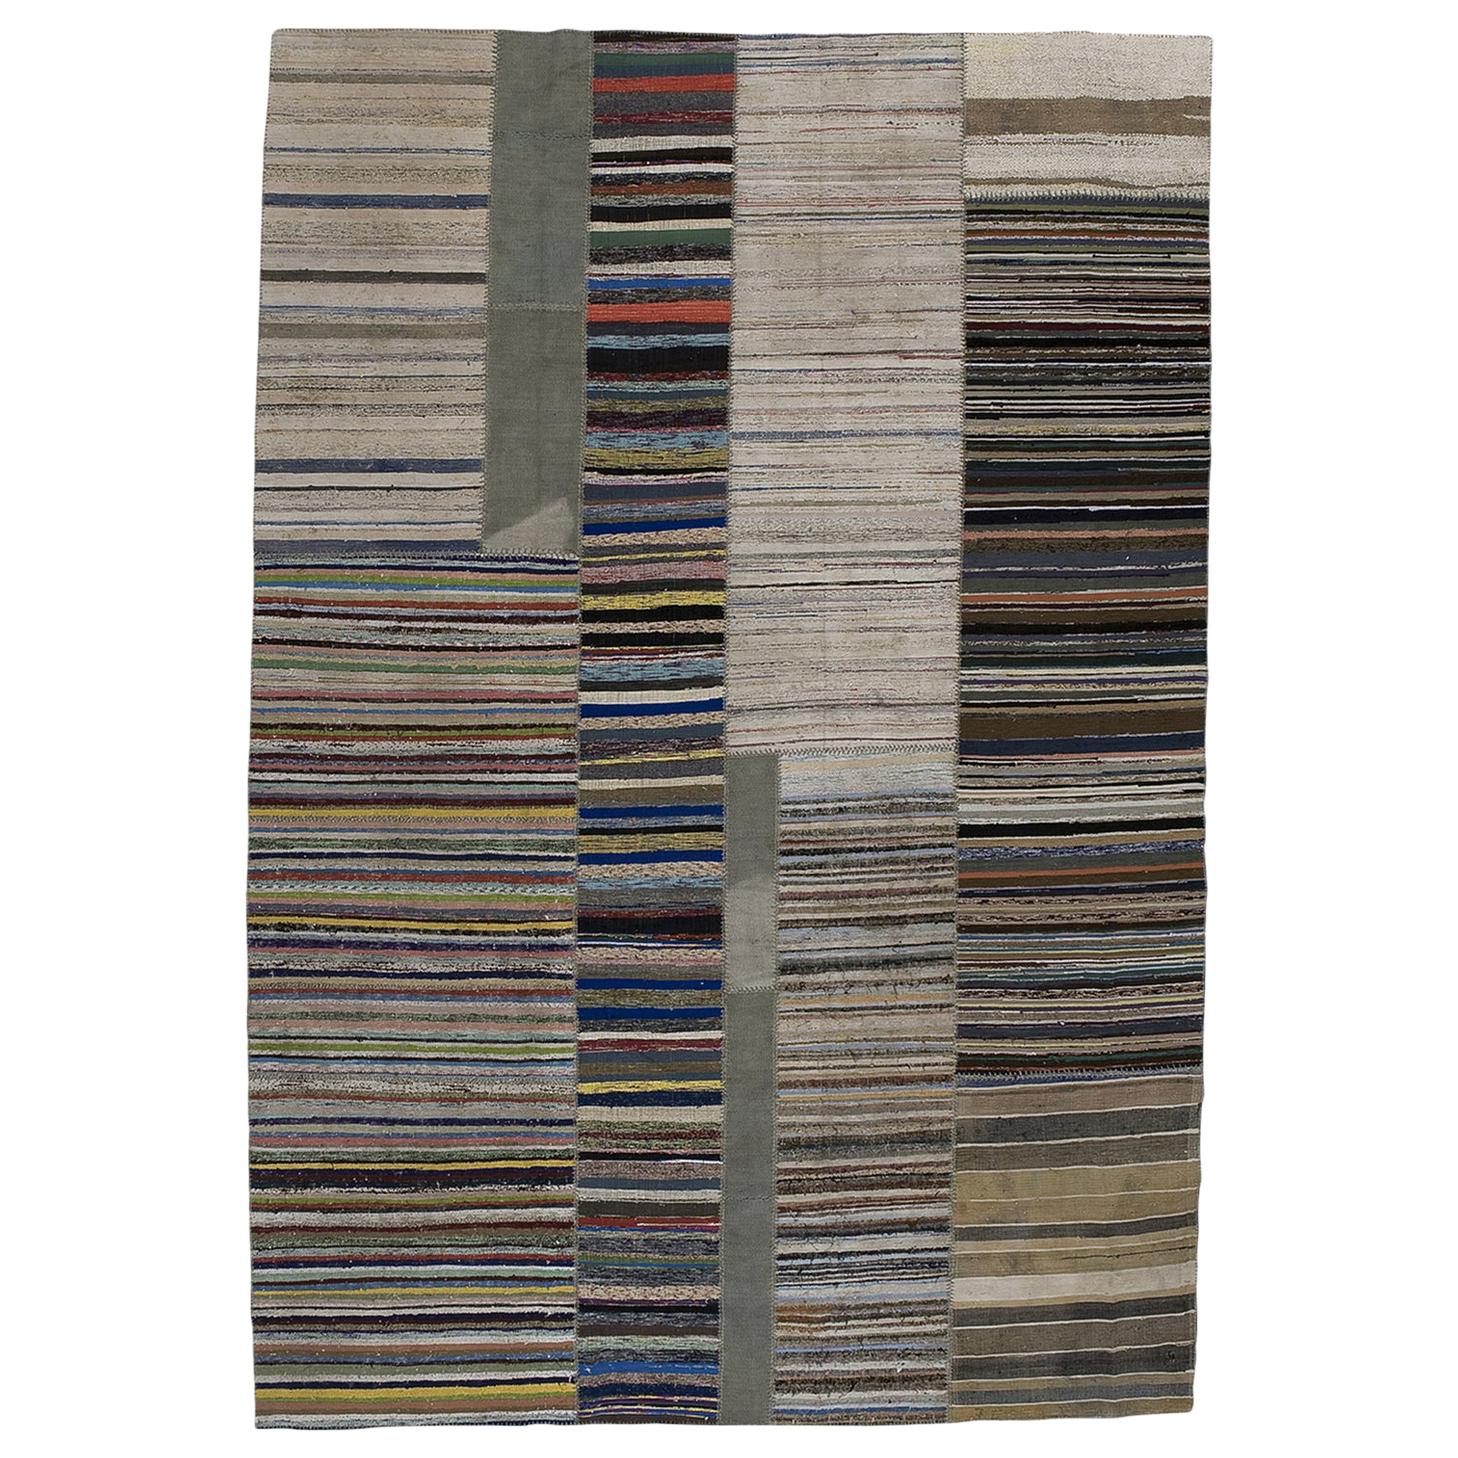 Patchwork Decolorized 6 Carpet